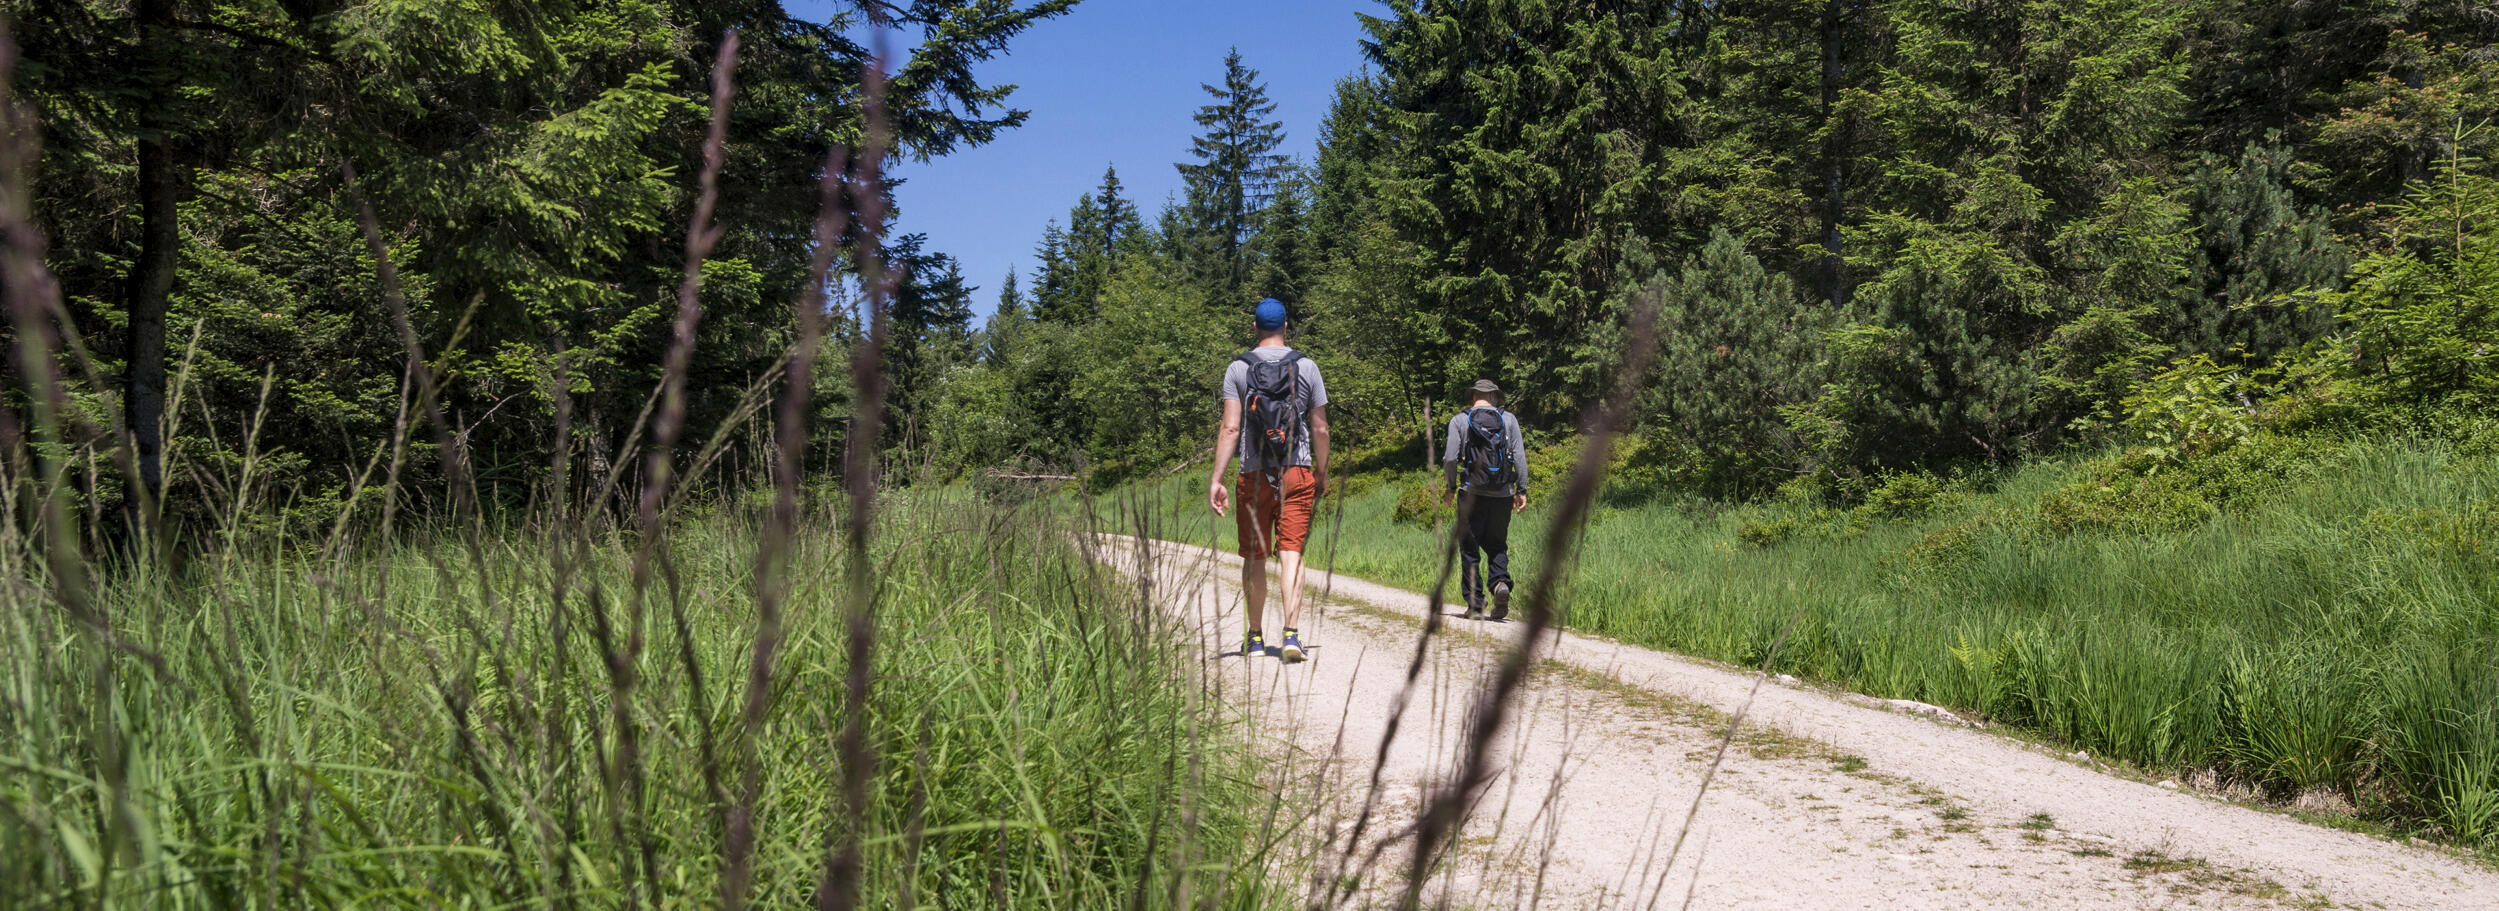 Zwei Männer laufen auf einem breiten Weg durch den Wald